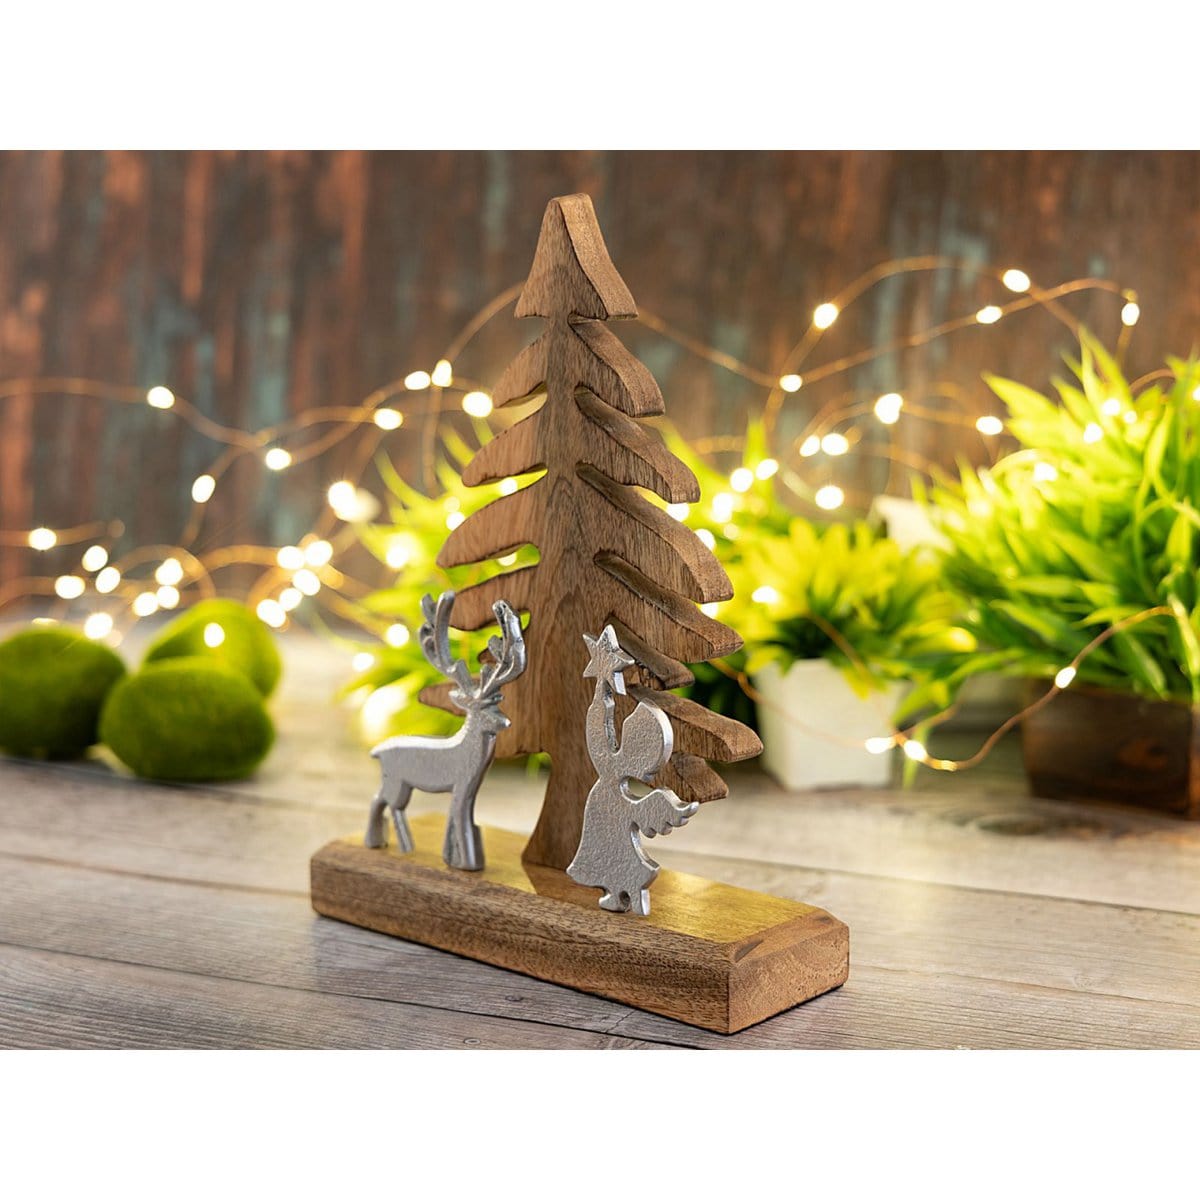 Voglrieder kreatives Wohnen Houten figuur kerstboom met hert en engel 20x27cm Kerstdecoratie mangohout aluminium